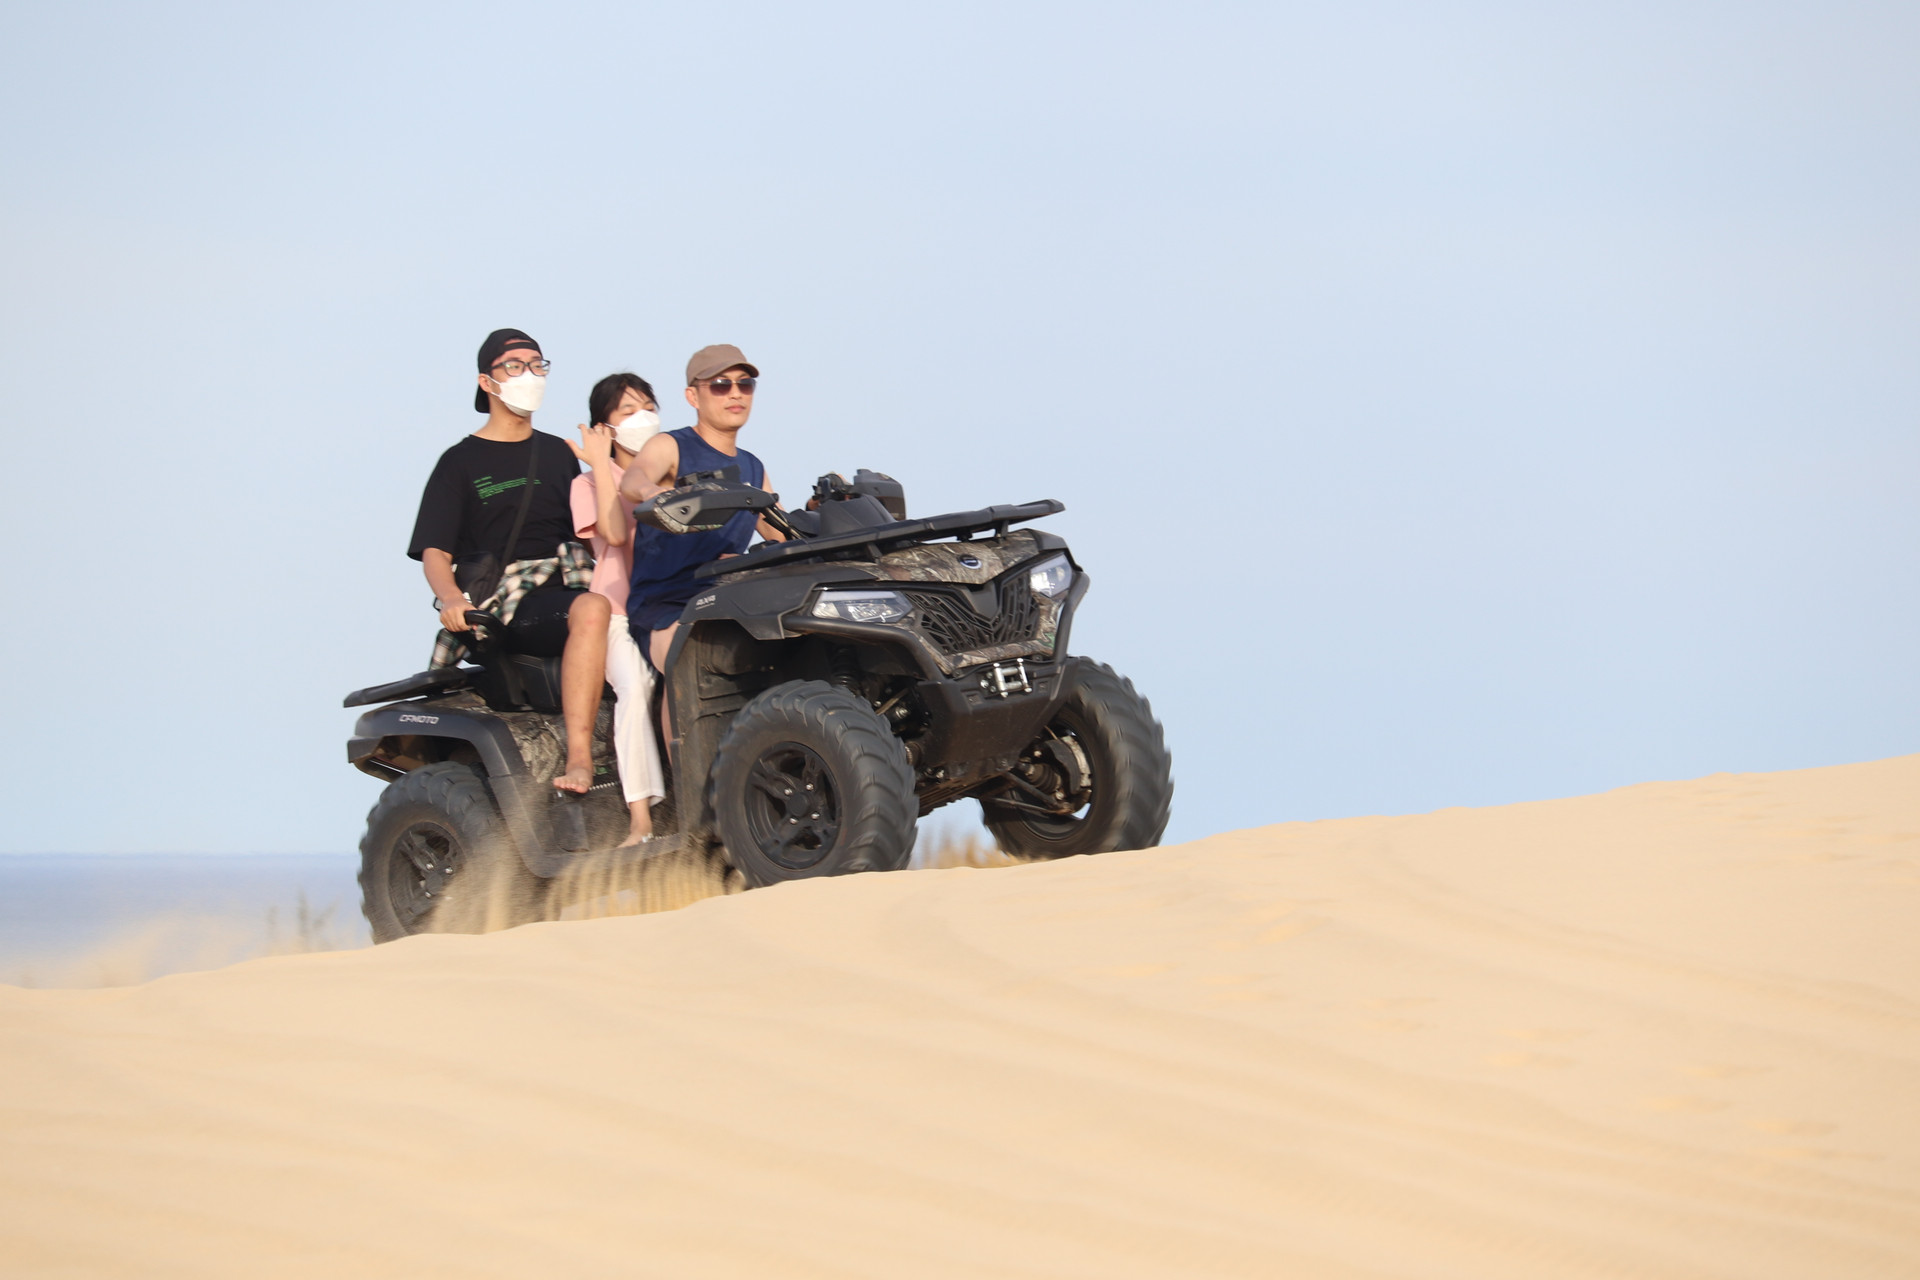 Sau hai năm vắng bóng do dịch Covid-19, giờ đây đồi cát Quang Phú lại rộn rã bước chân lữ khách bởi những trò chơi thú vị, mạo hiểm trên cát.  Được biết, chỉ trong vòng 2 tháng qua, đồi cát Quang Phú đã đón vài chục nghìn lượt du khách đến đây tham gia và trải nghiệm.